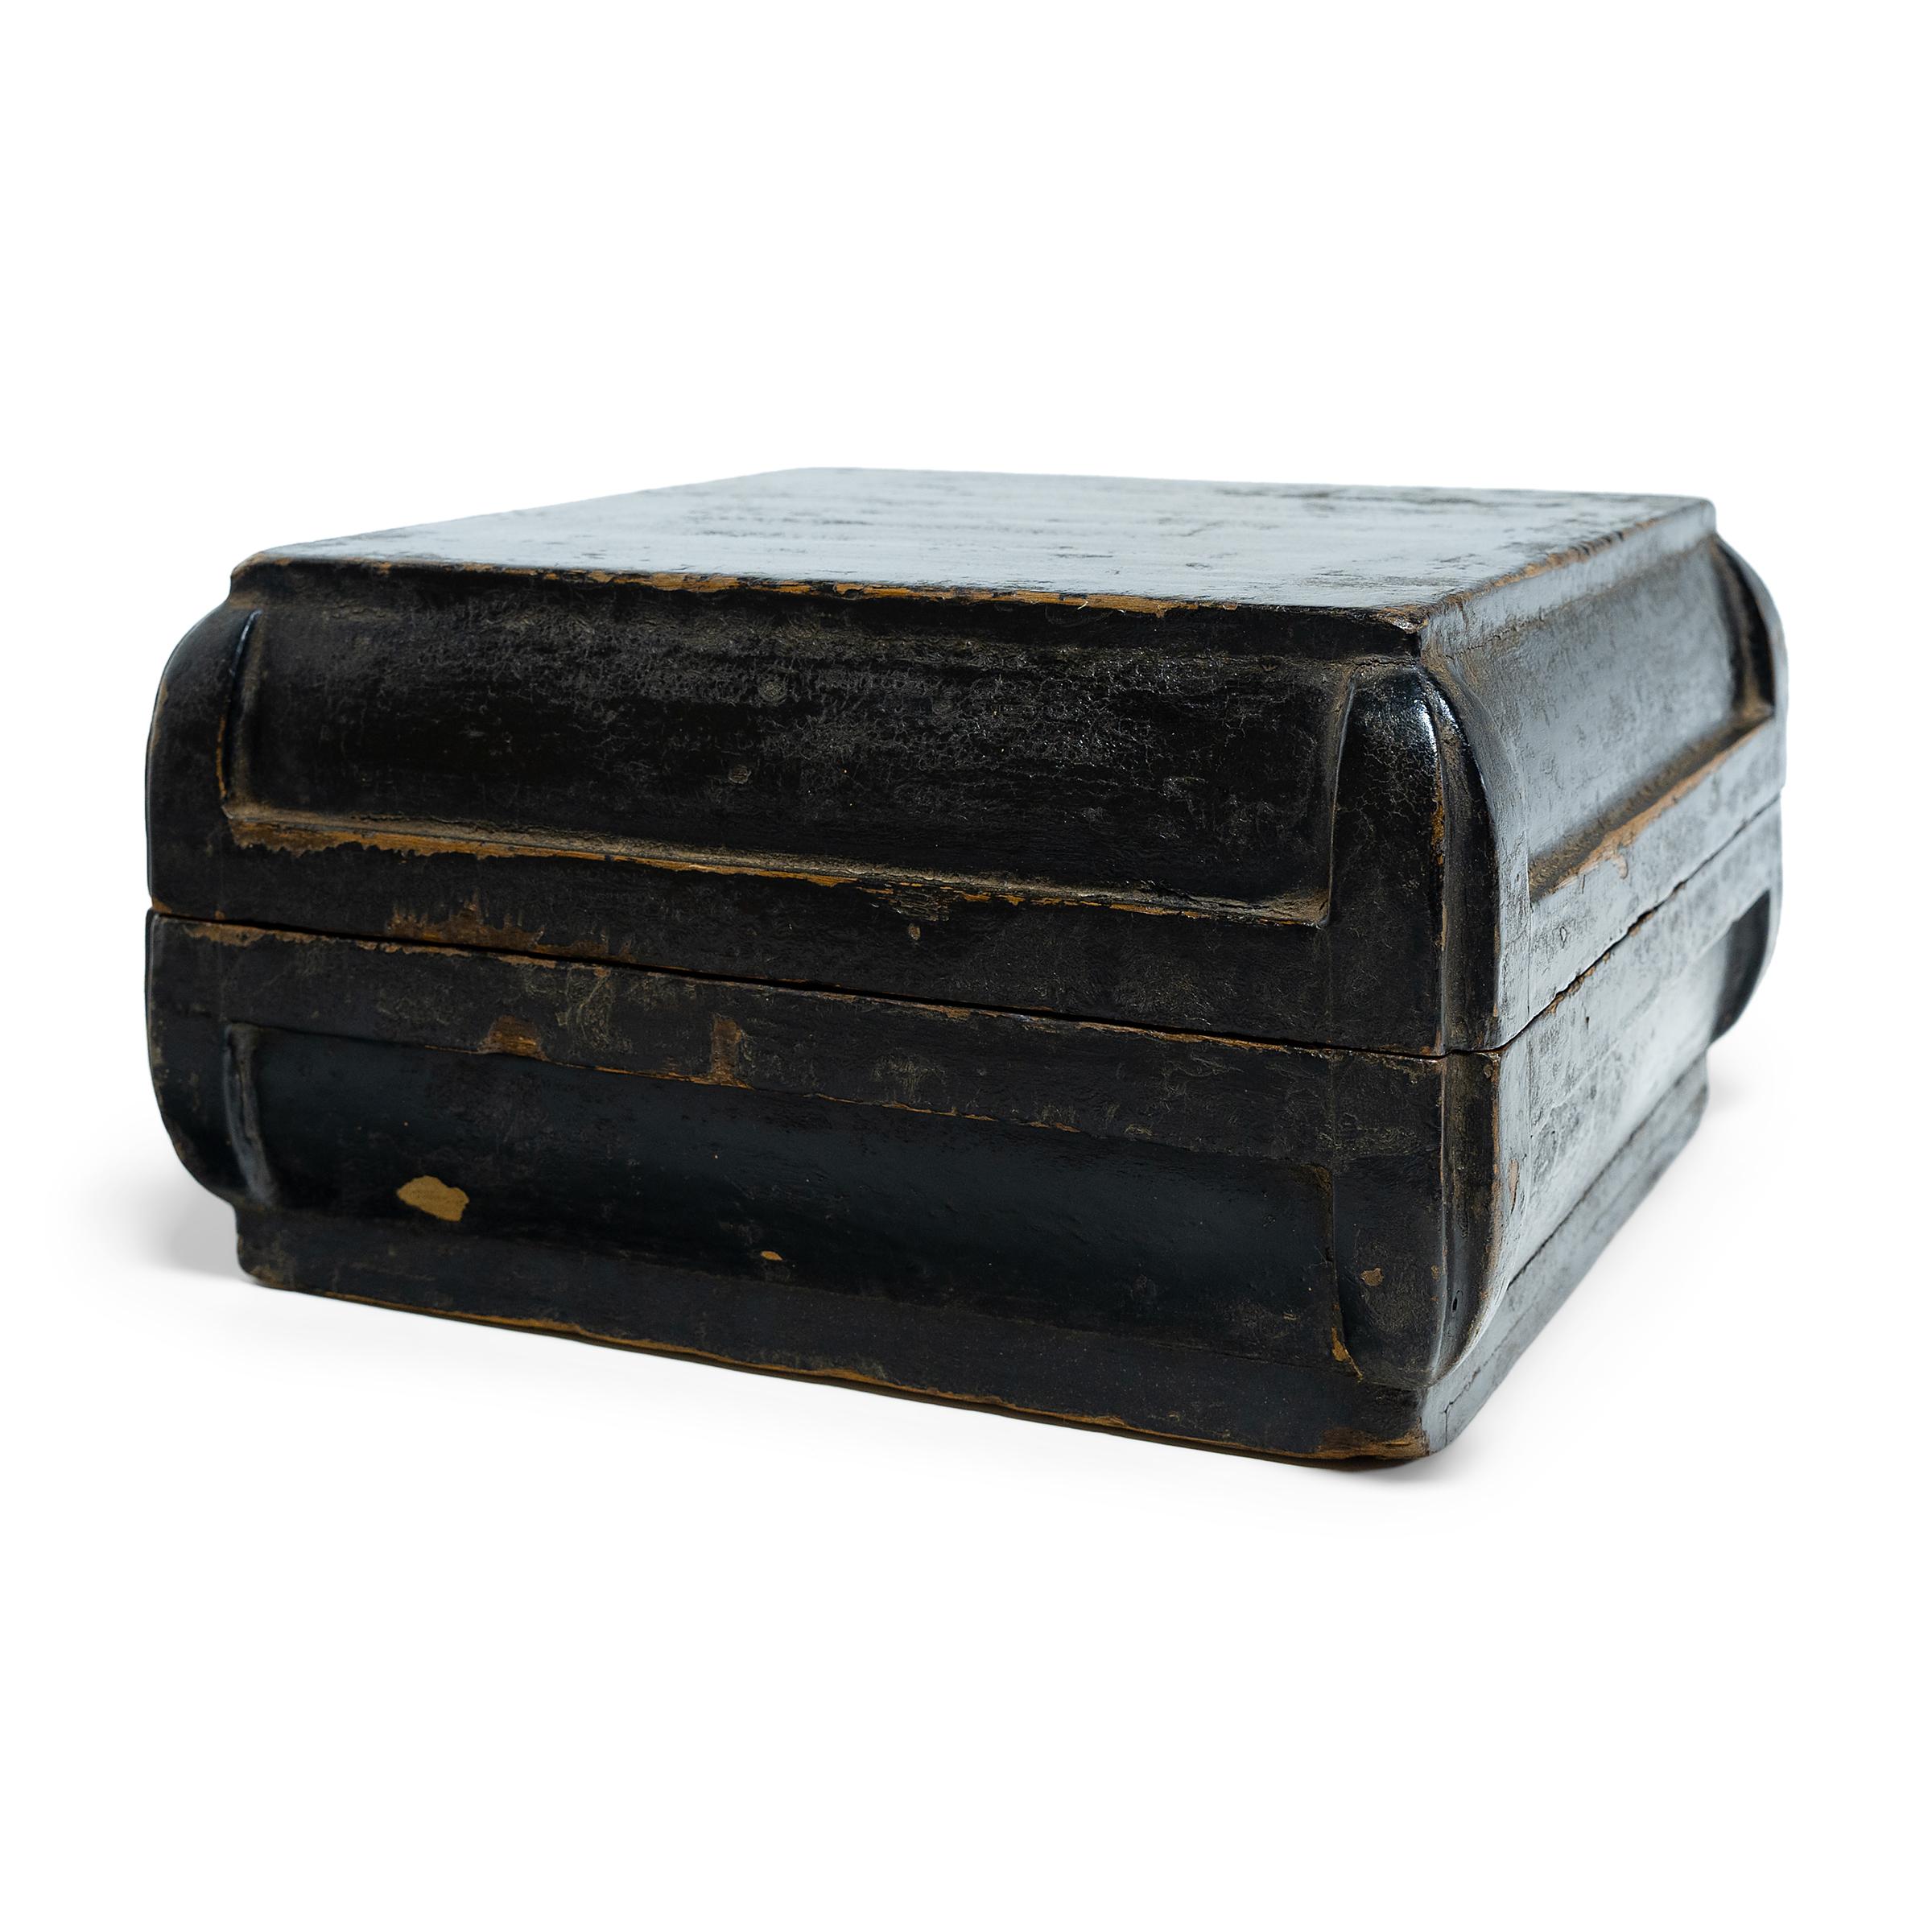 Diese schlichte, lackierte Schachtel wurde im 19. Jahrhundert als Imbissschachtel verwendet, die zu Feiertagen und besonderen Anlässen verschenkt wurde. Zur Freude der Empfänger kam beim Öffnen der unscheinbaren Schachtel eine Fülle beliebter Snacks